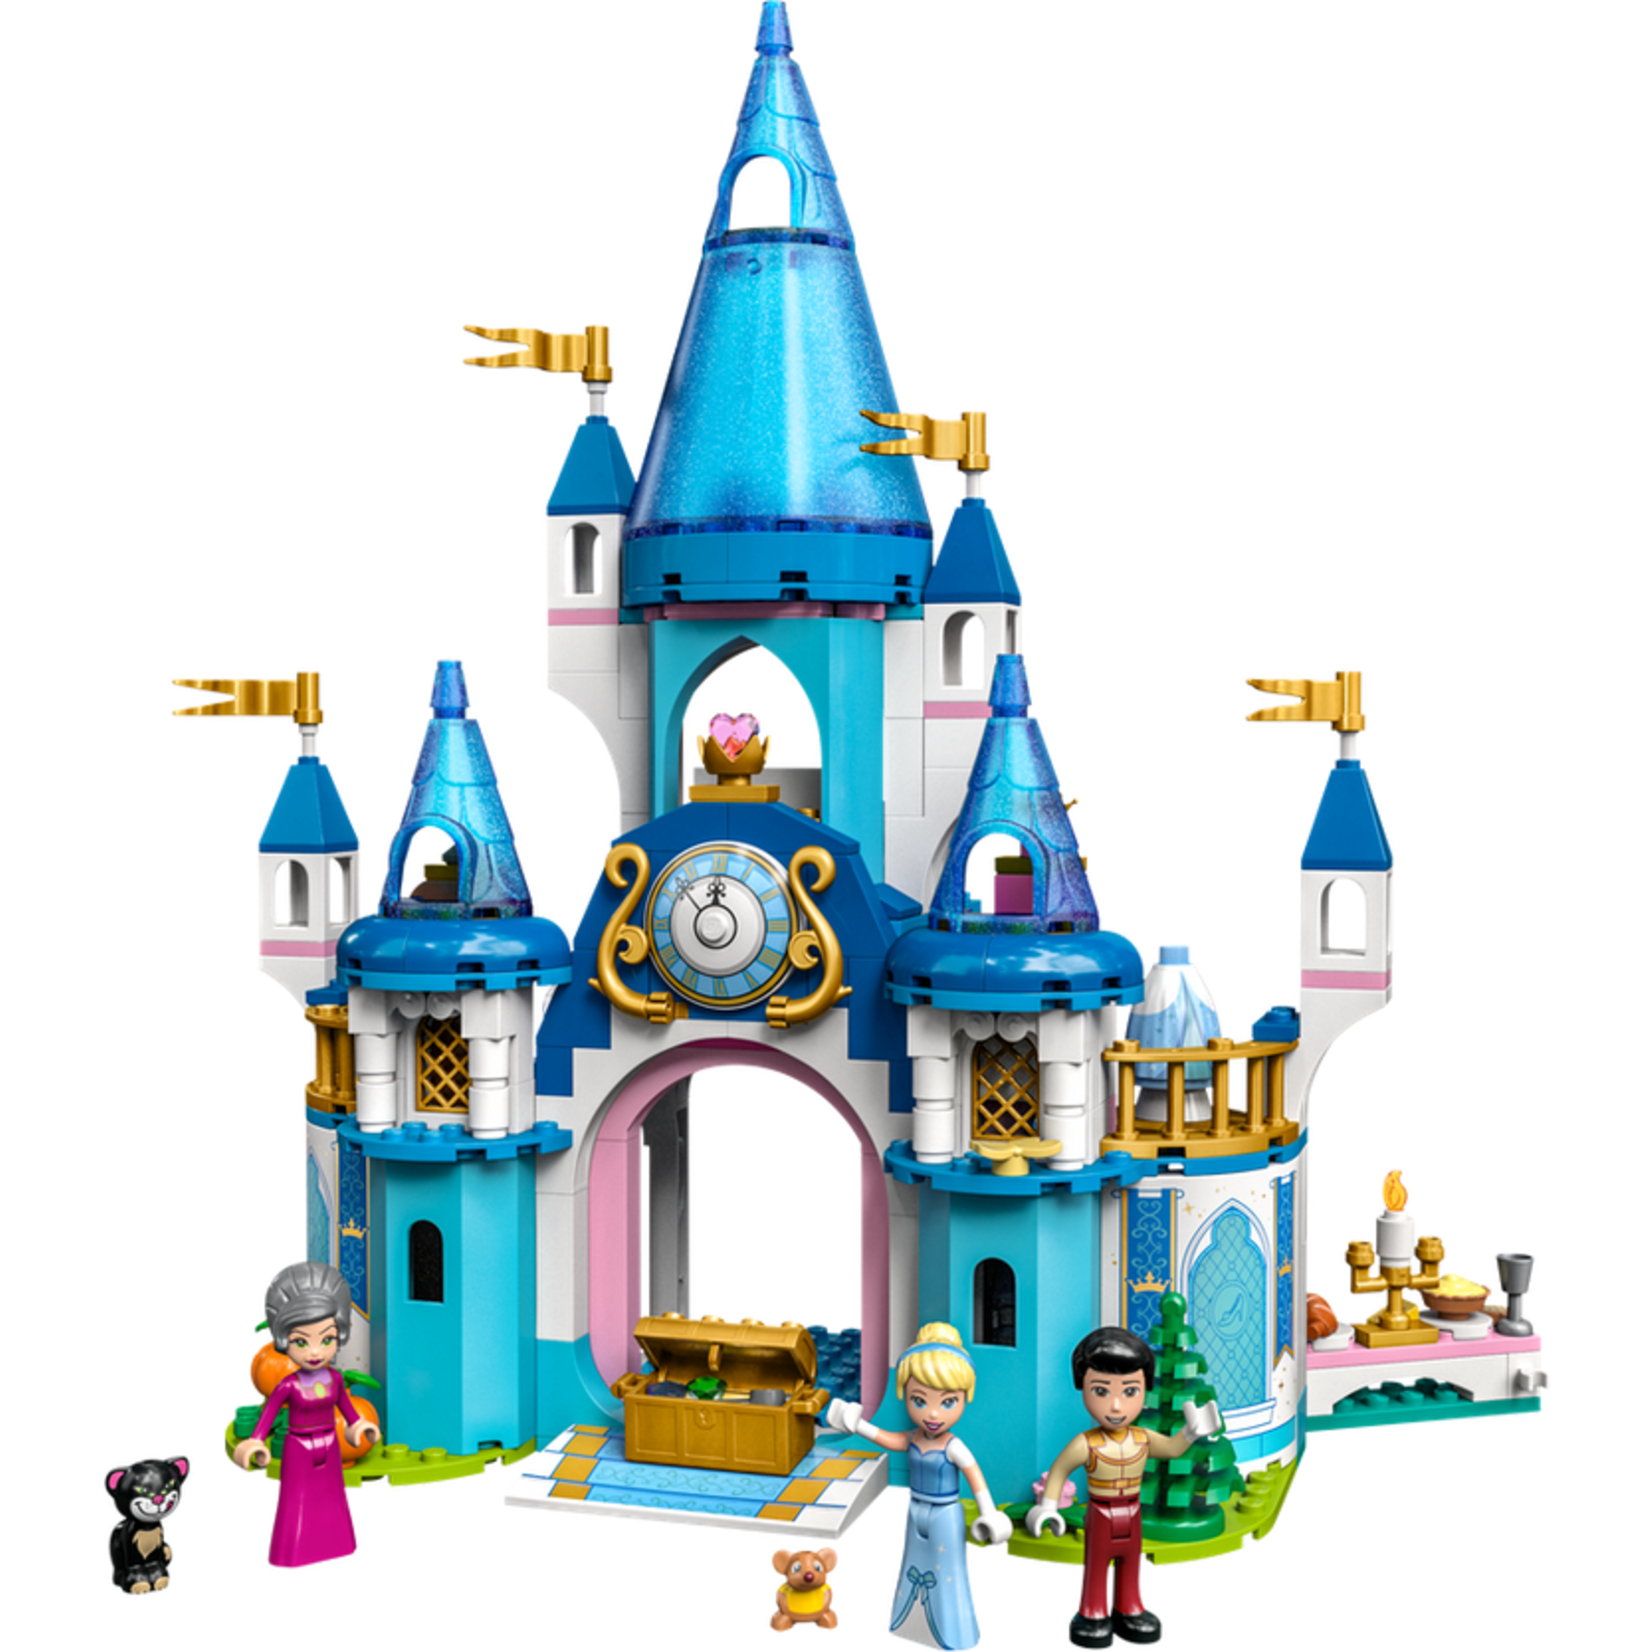 Lego *****Lego 43206 Disney - Le château de Cendrillon et du prince charmant